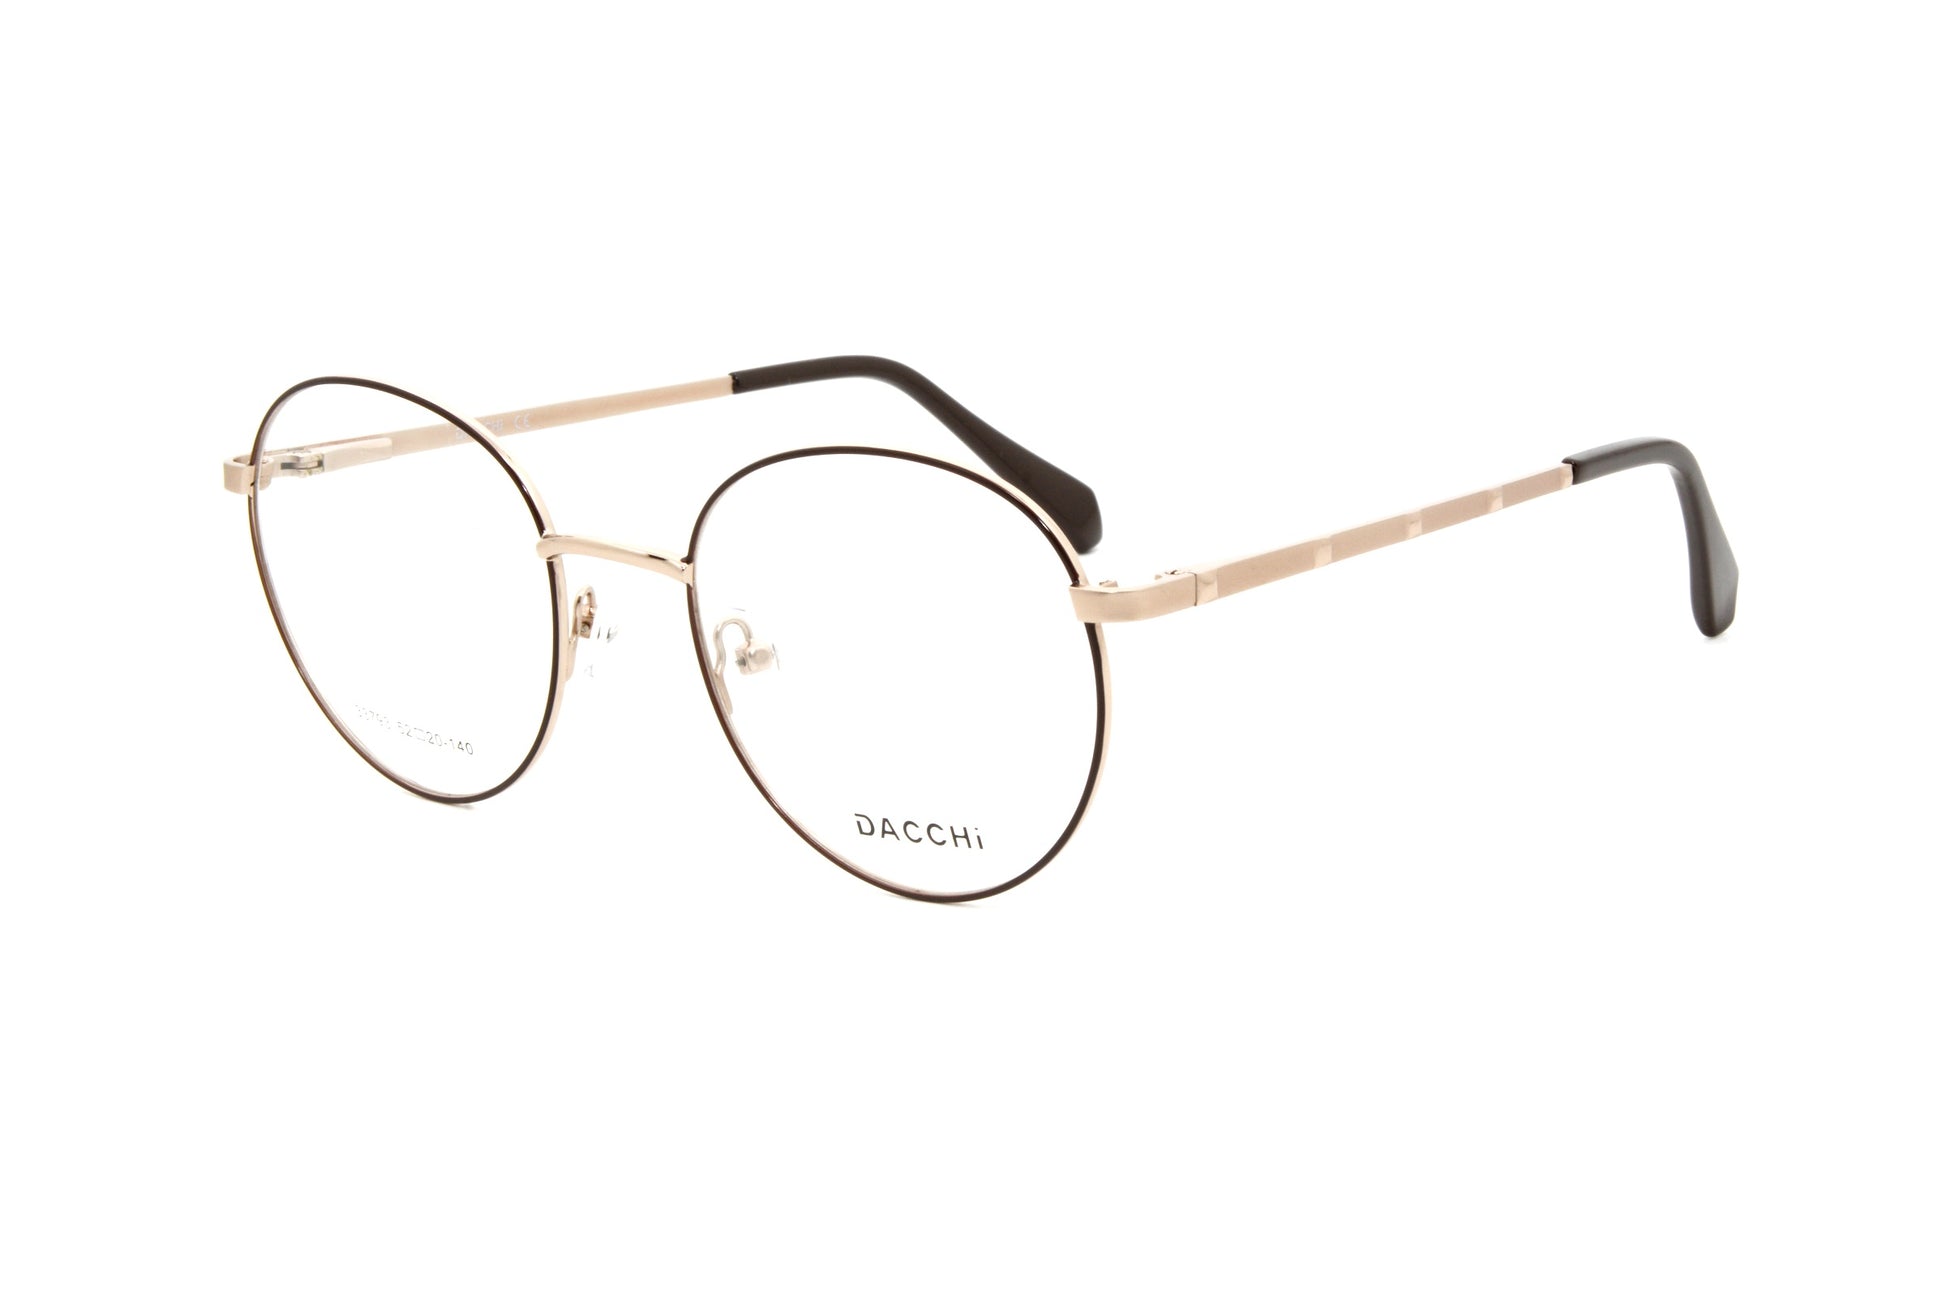 Dacchi eyewear D33793 C2